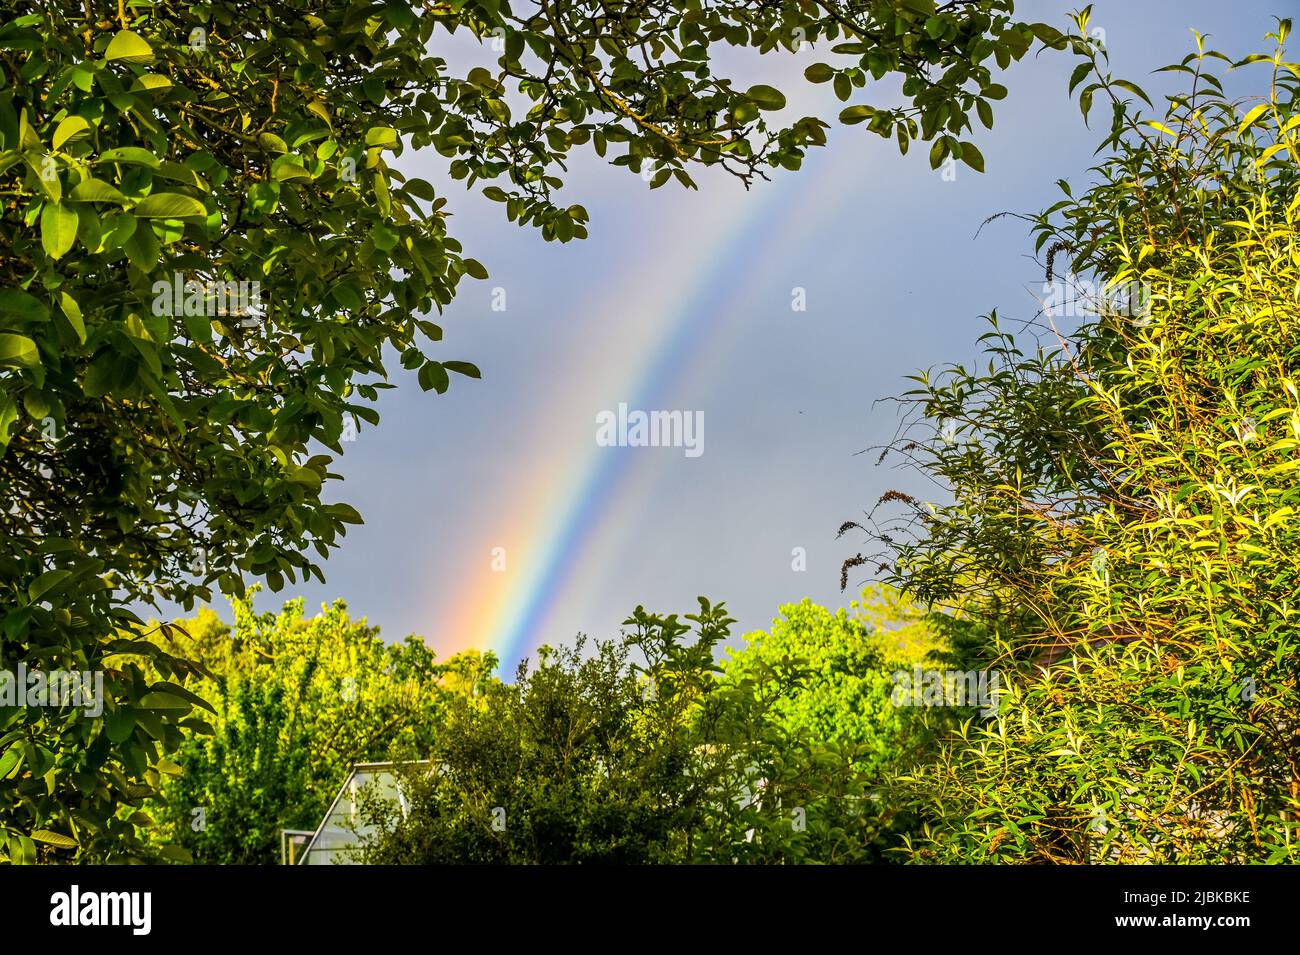 Ein Regenbogen, ein mehrfarbiger Bogen, ein von Vegetation umrahmter optischer Phänomenabschnitt mit dem Hintergrund eines dunkelgrauen Himmels Stockfoto